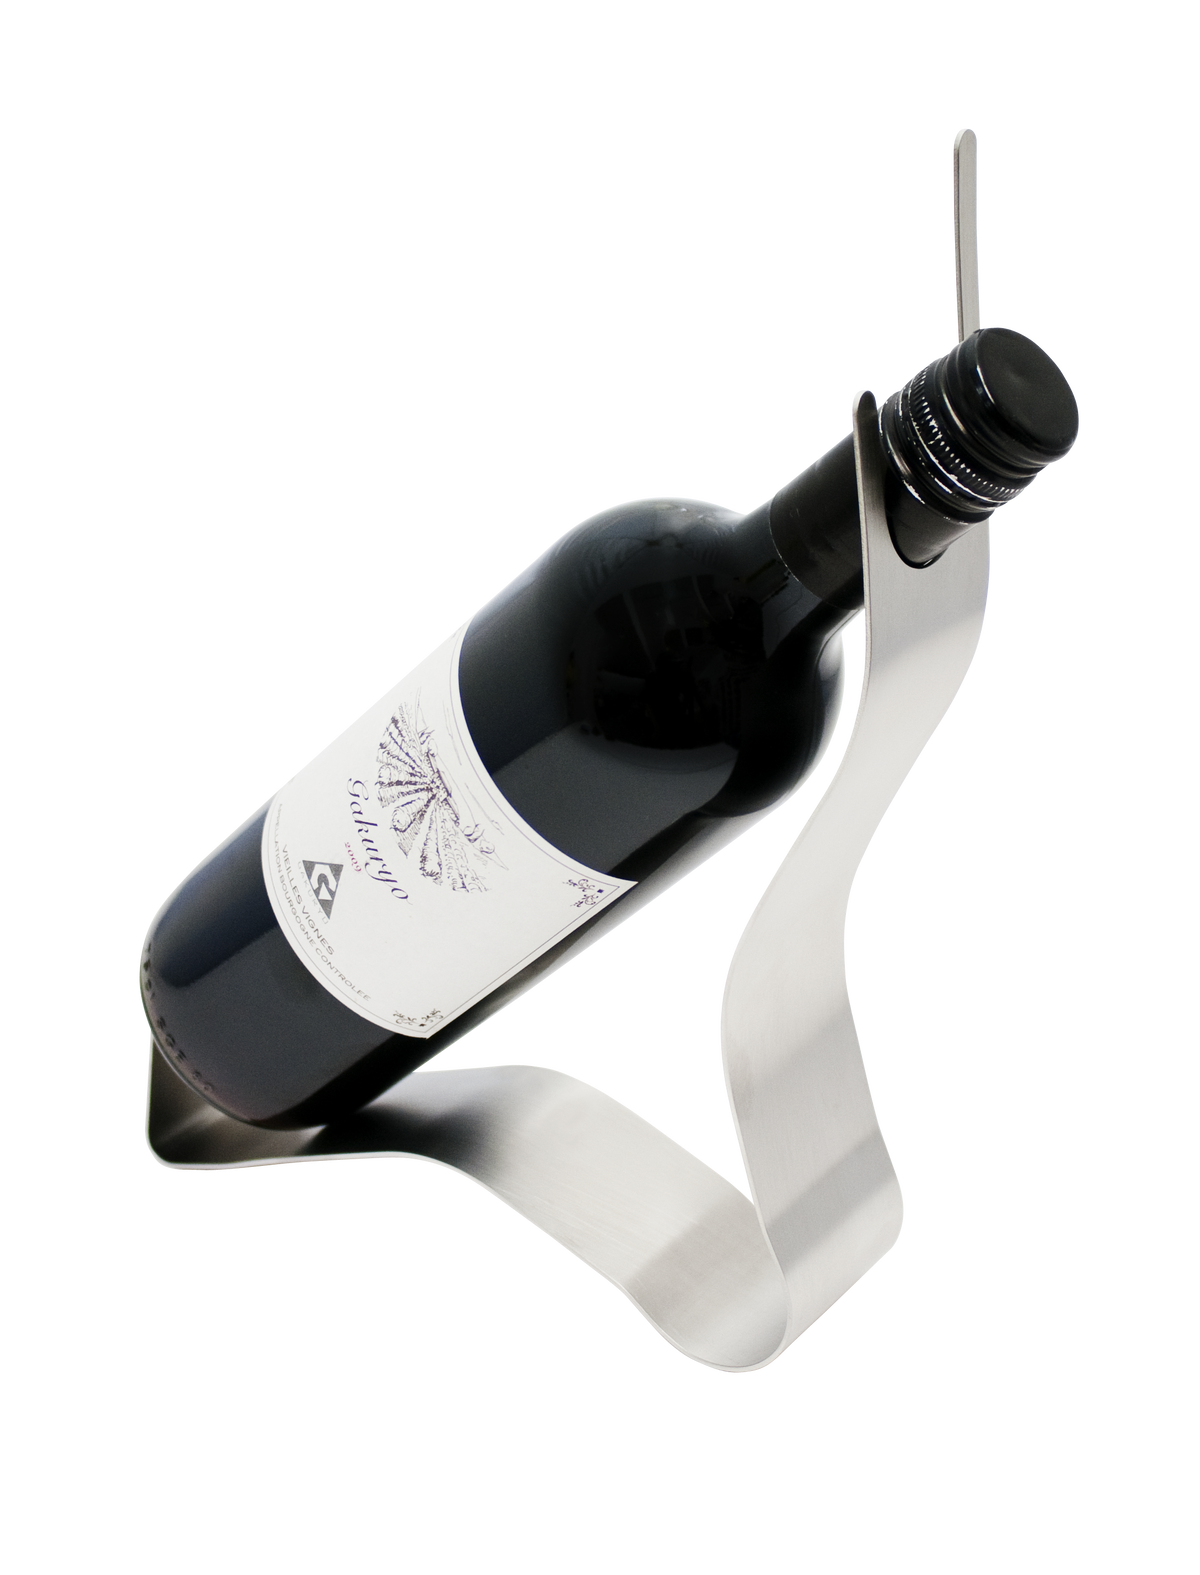 ウェーブ ステンレス製ワインホルダー Gakuryo お気に入りのボトルをインテリアに シンプルおしゃれなステンレス製ワインホルダー